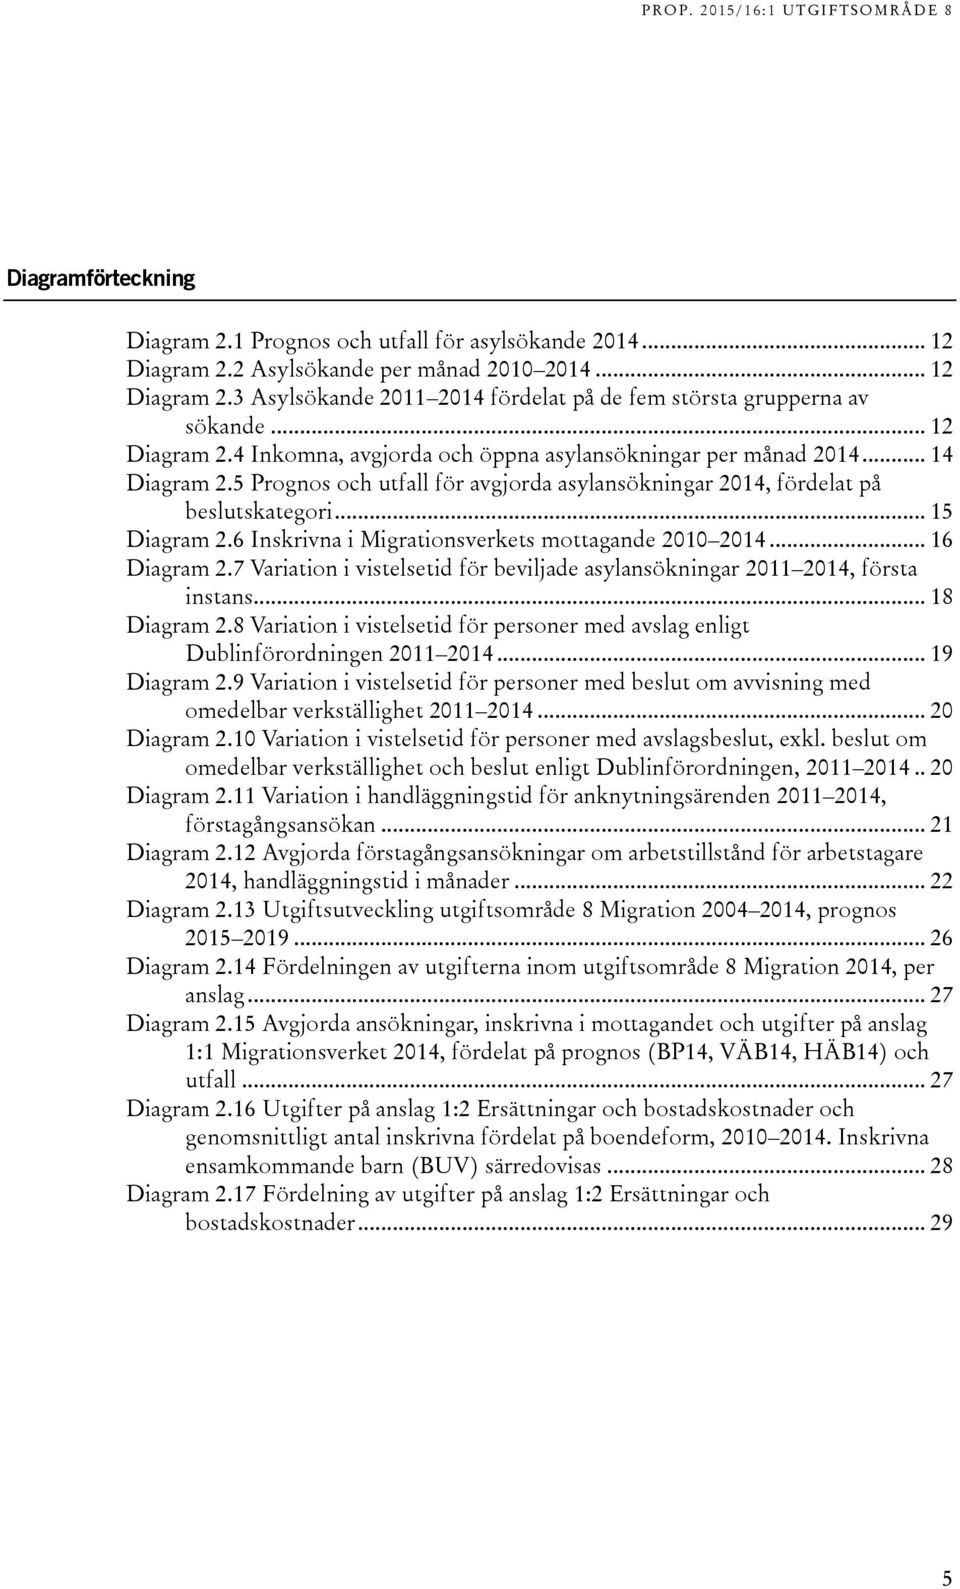 6 Inskrivna i Migrationsverkets mottagande 2010 2014... 16 Diagram 2.7 Variation i vistelsetid för beviljade asylansökningar 2011 2014, första instans... 18 Diagram 2.